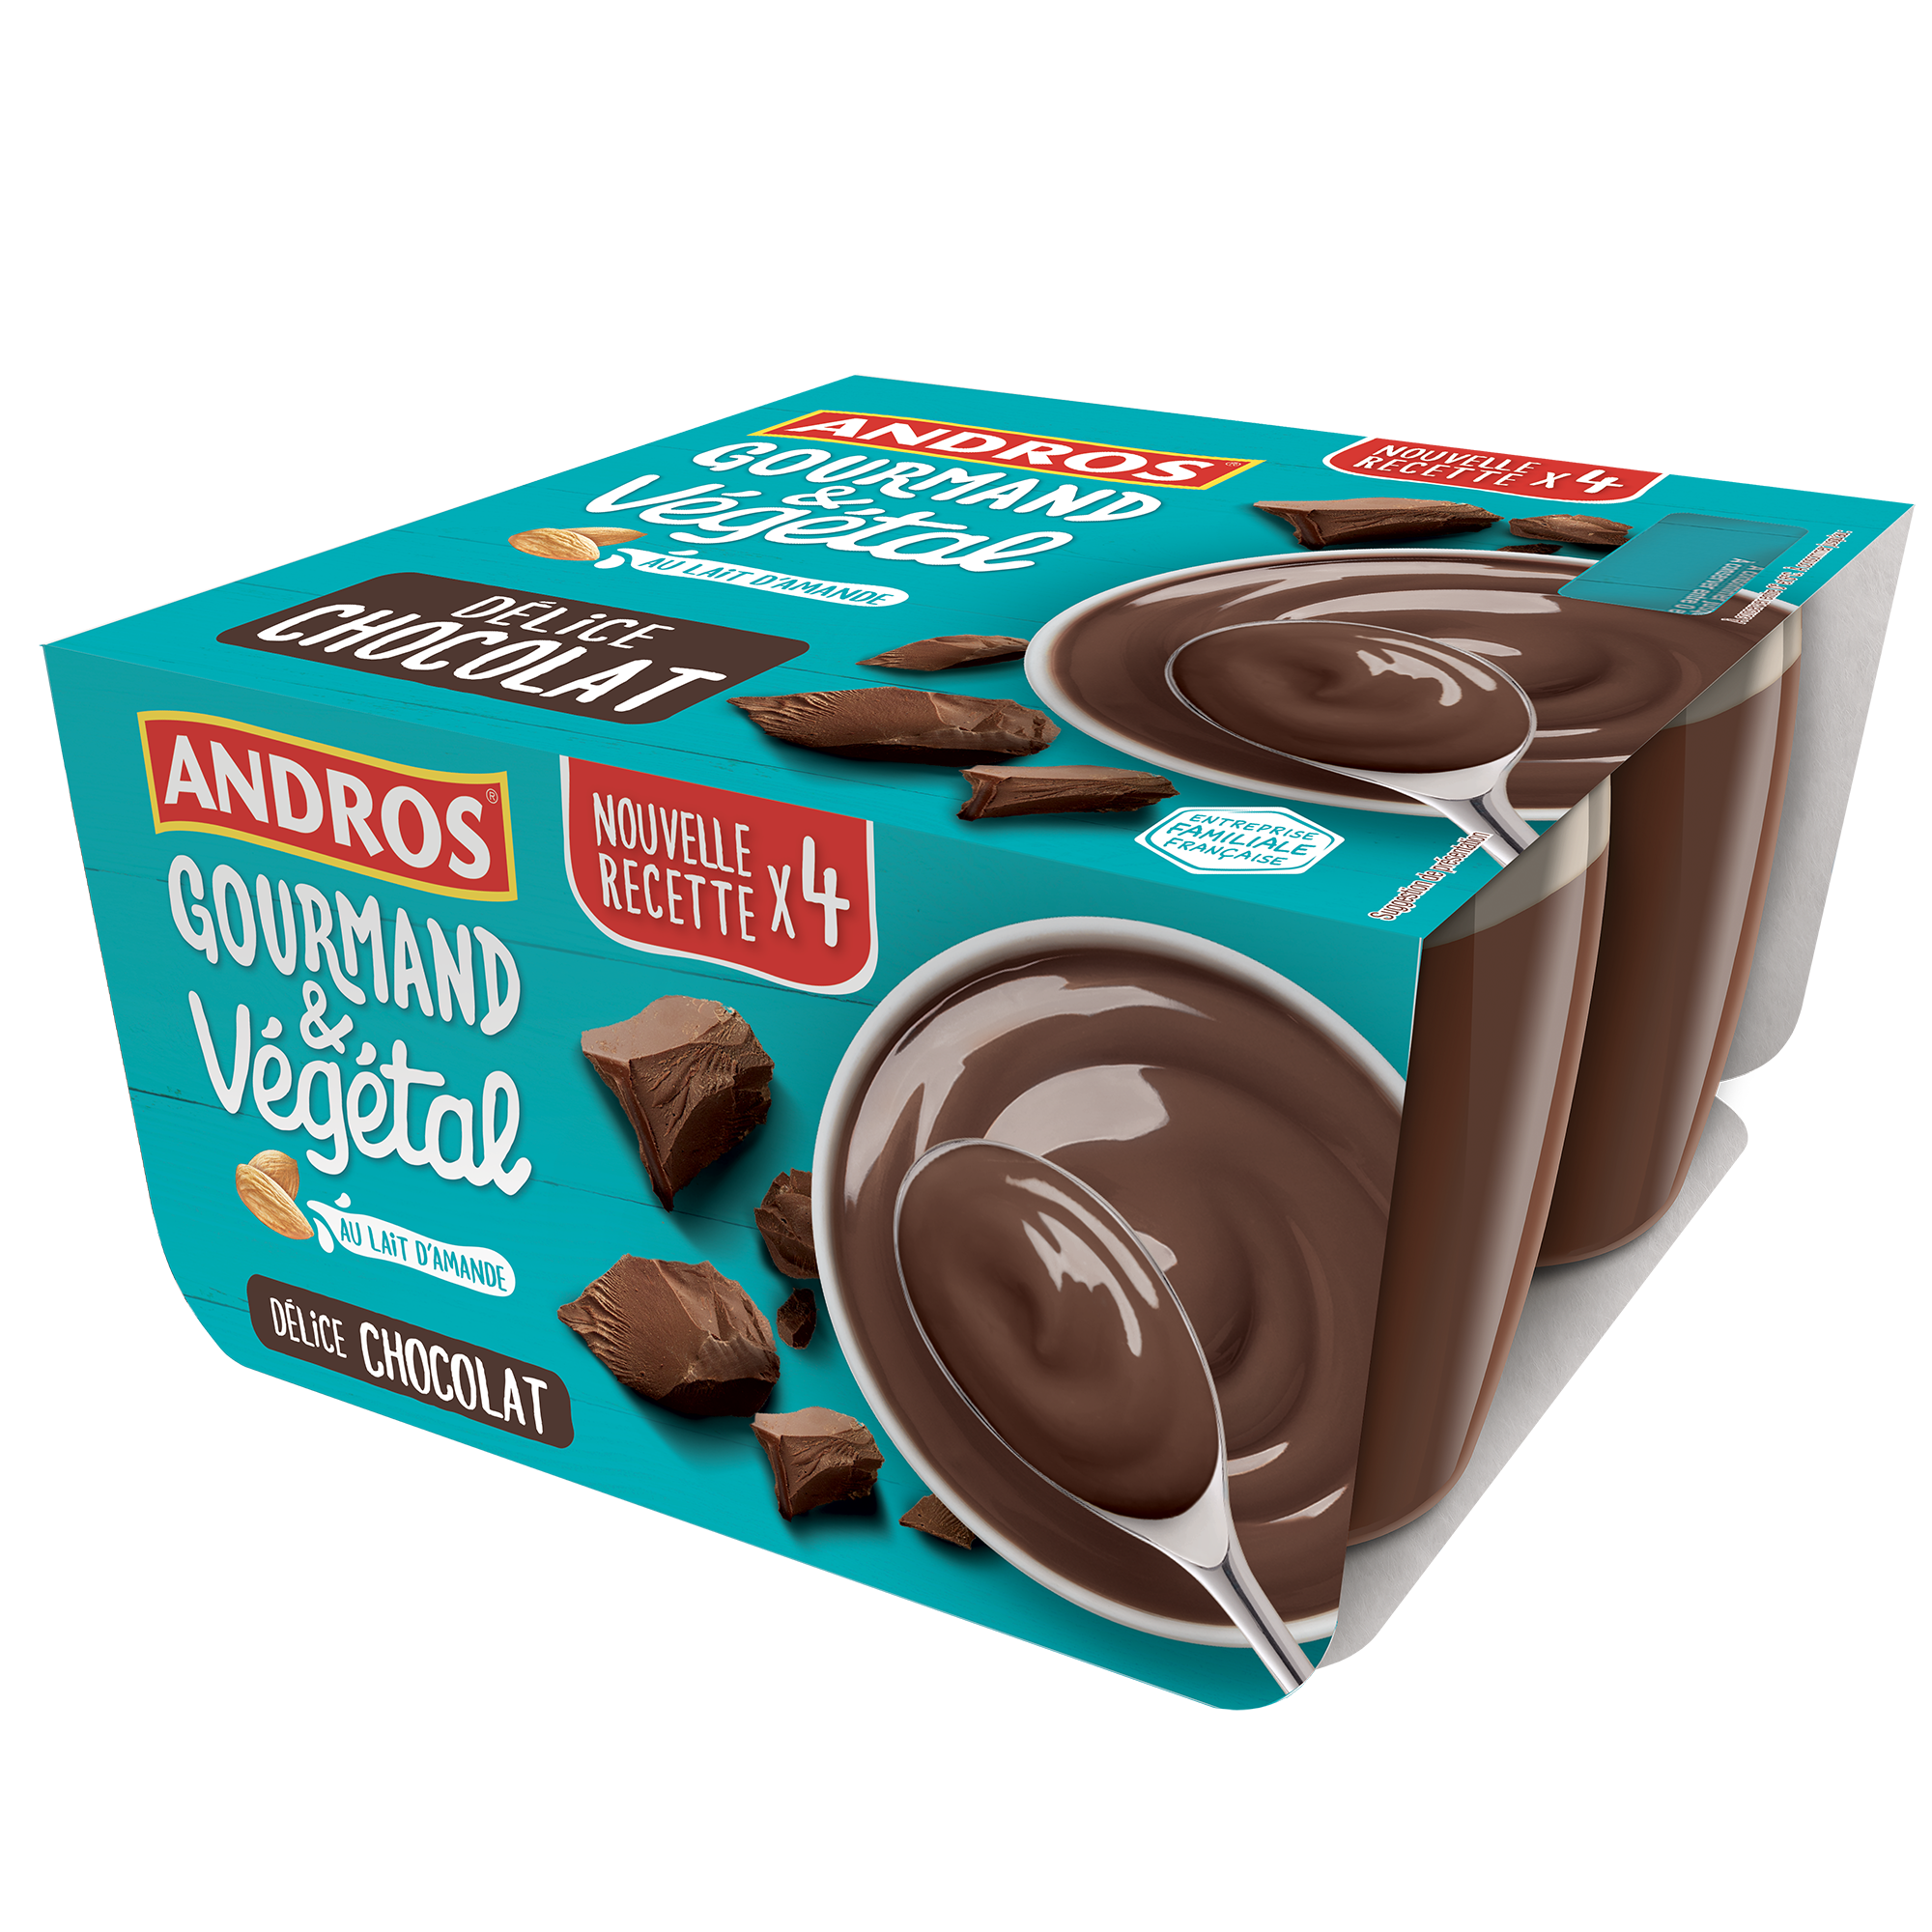 Délice chocolat Andros Gourmand & Végétal